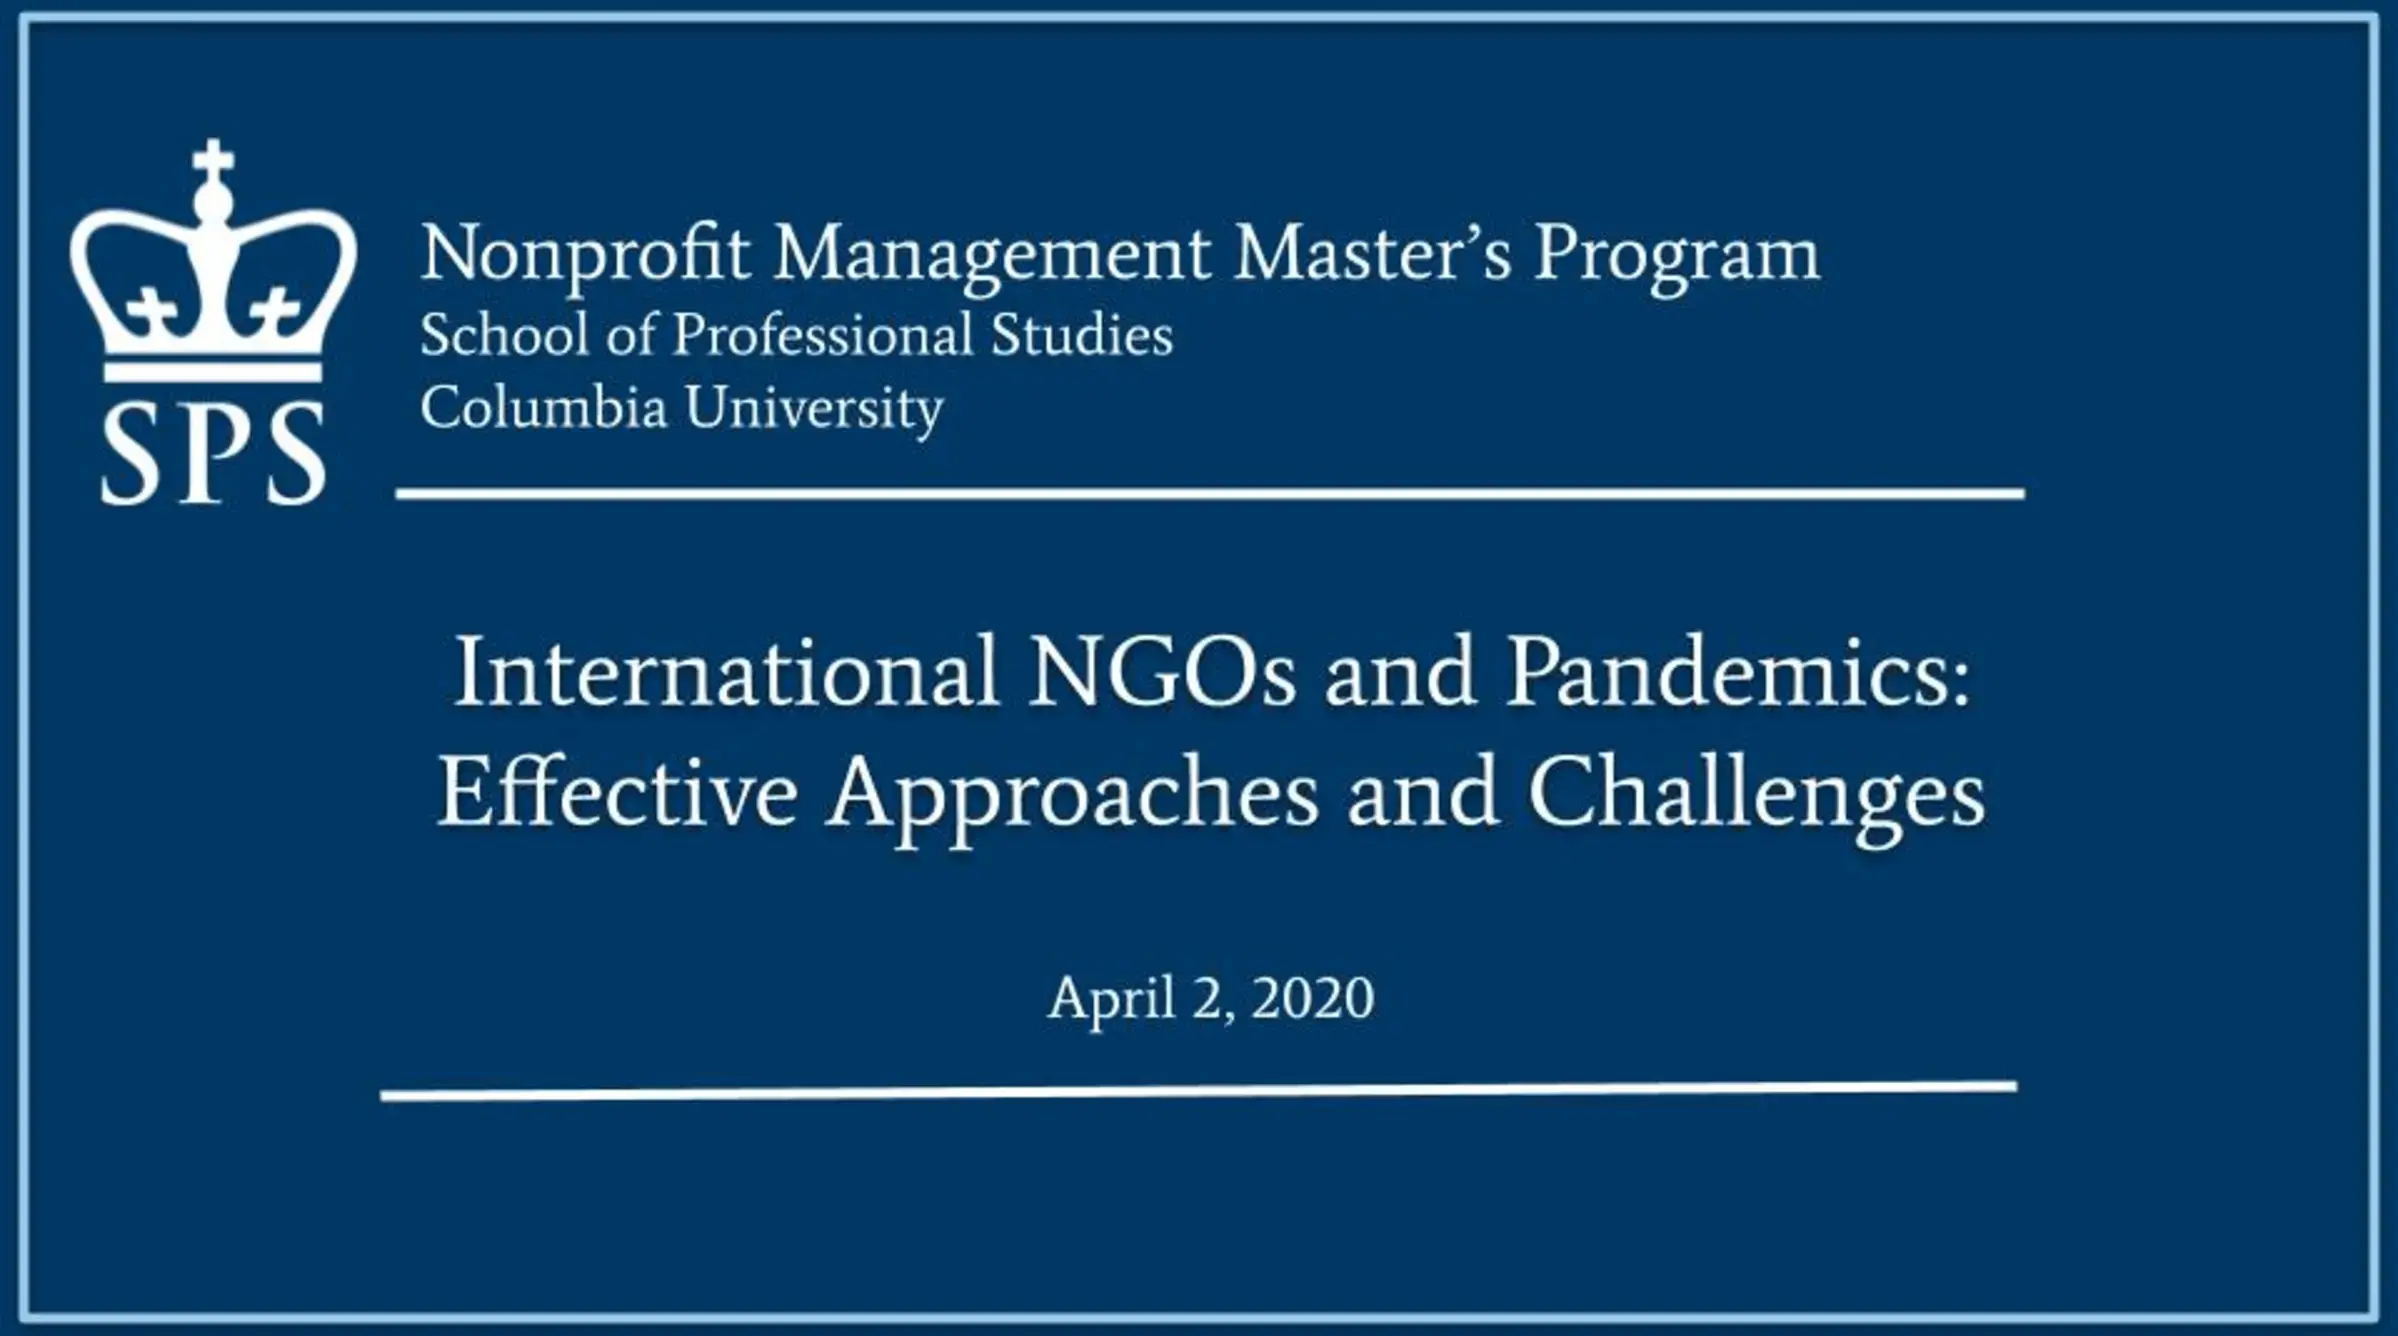 NGOs and Pandemics 